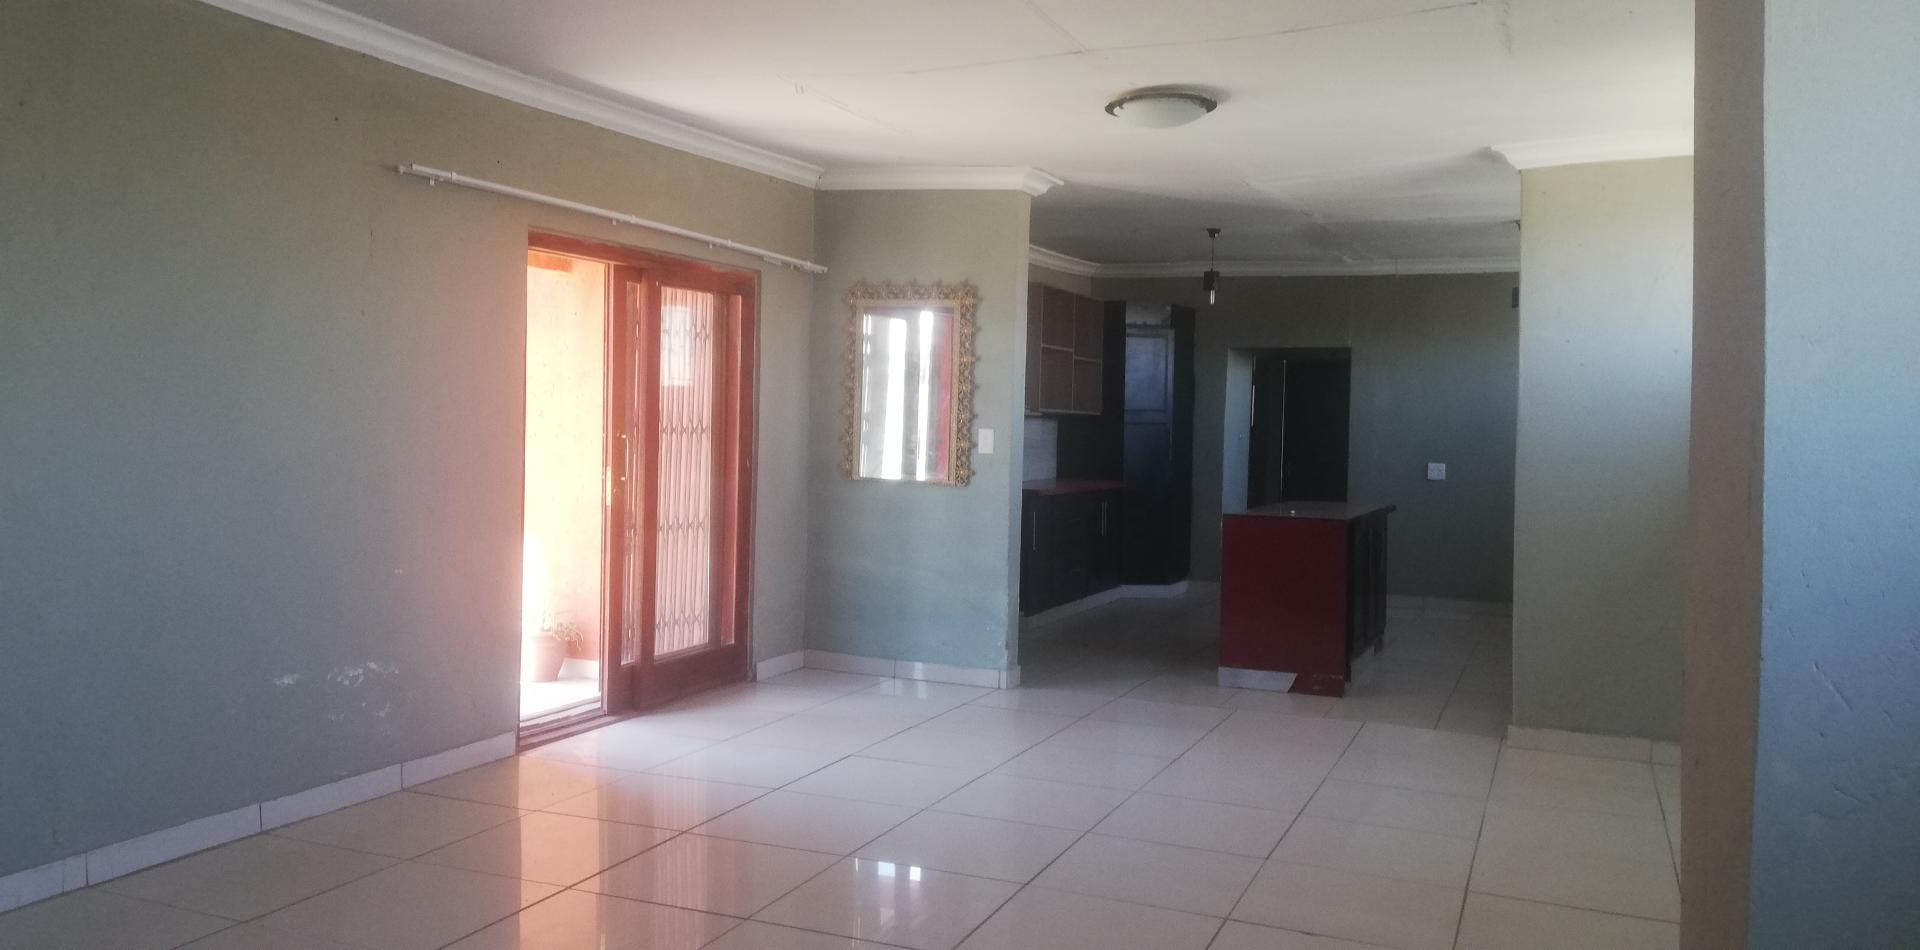 3 Bedroom Property for Sale in Spaarwater Gauteng